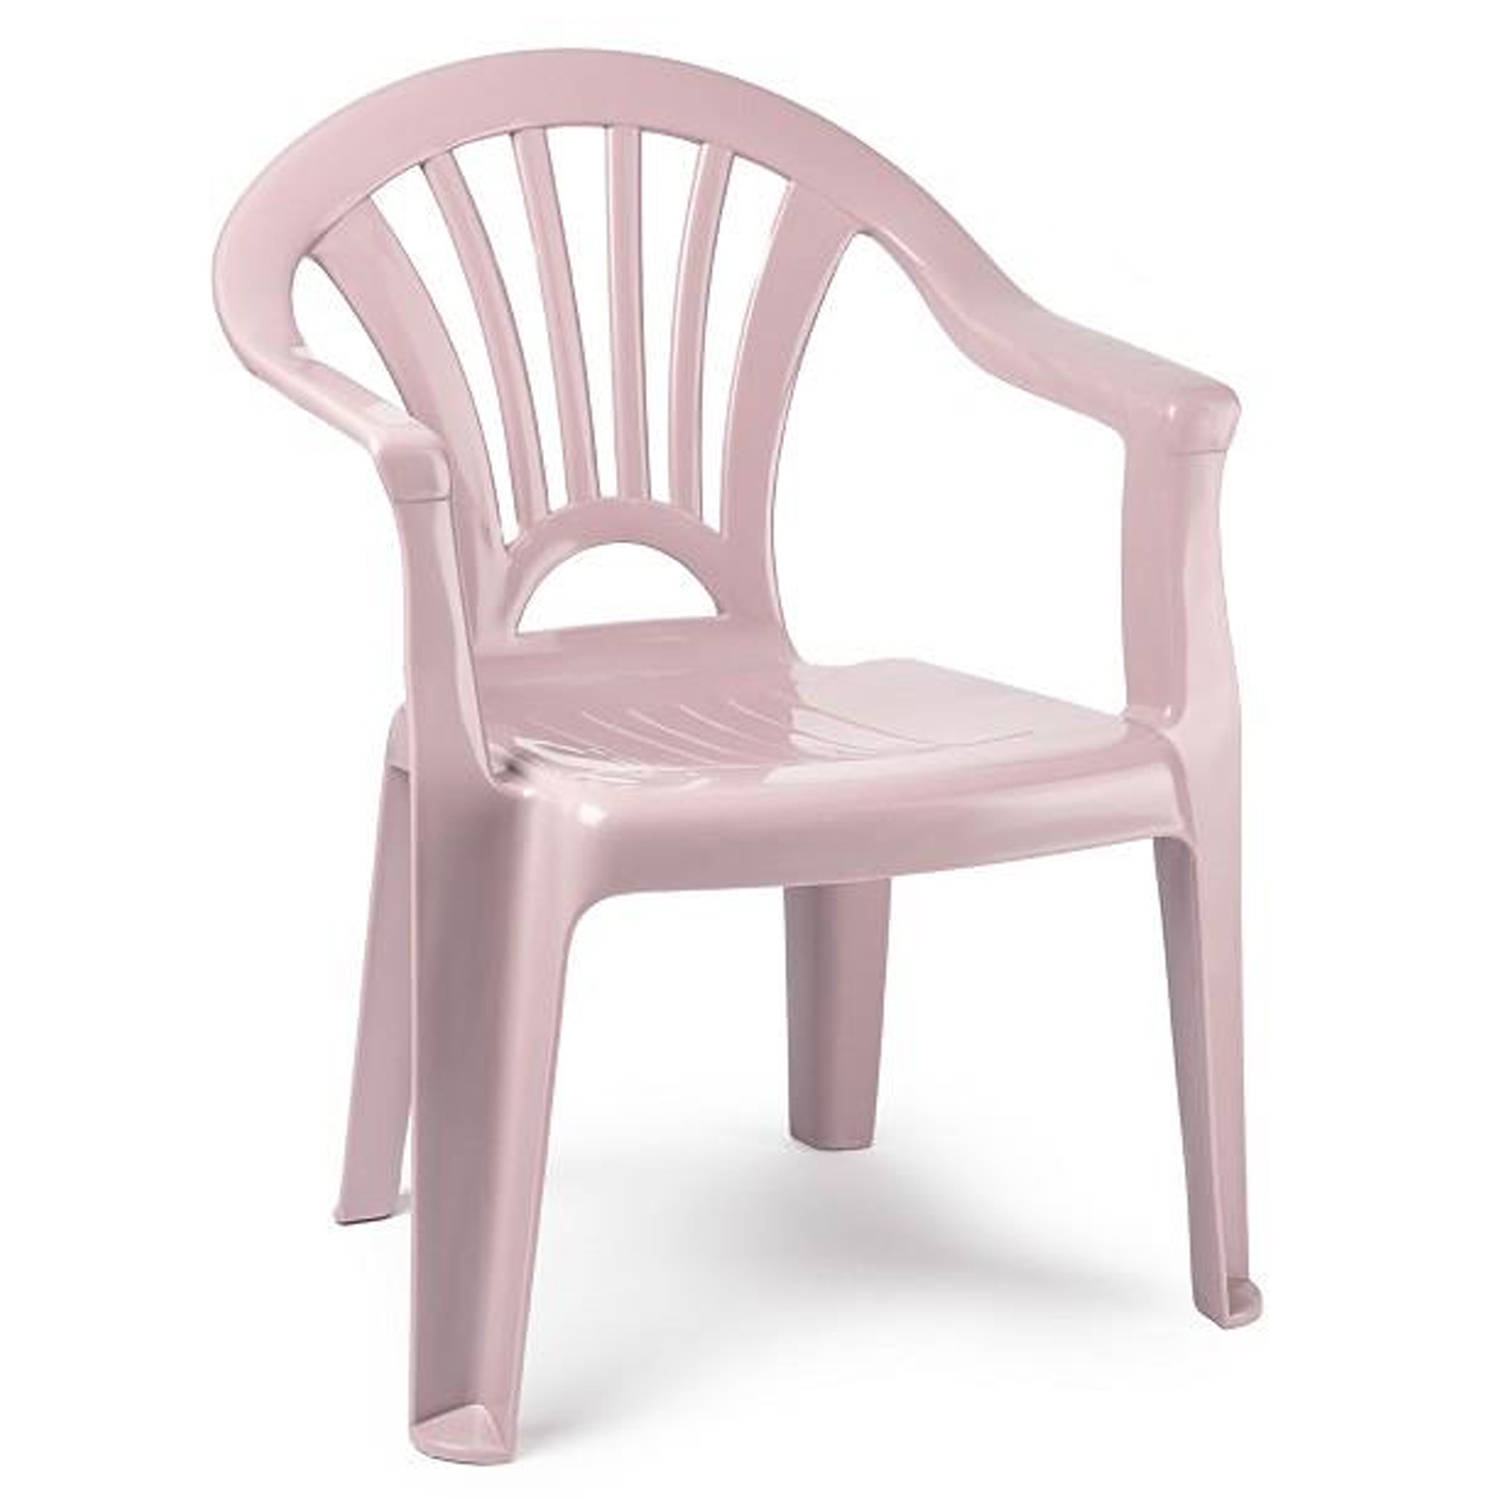 Plasticforte Kinderstoel van kunststof roze 35 x 28 x 50 cm tuin-camping-slaapkamer Kinderstoelen